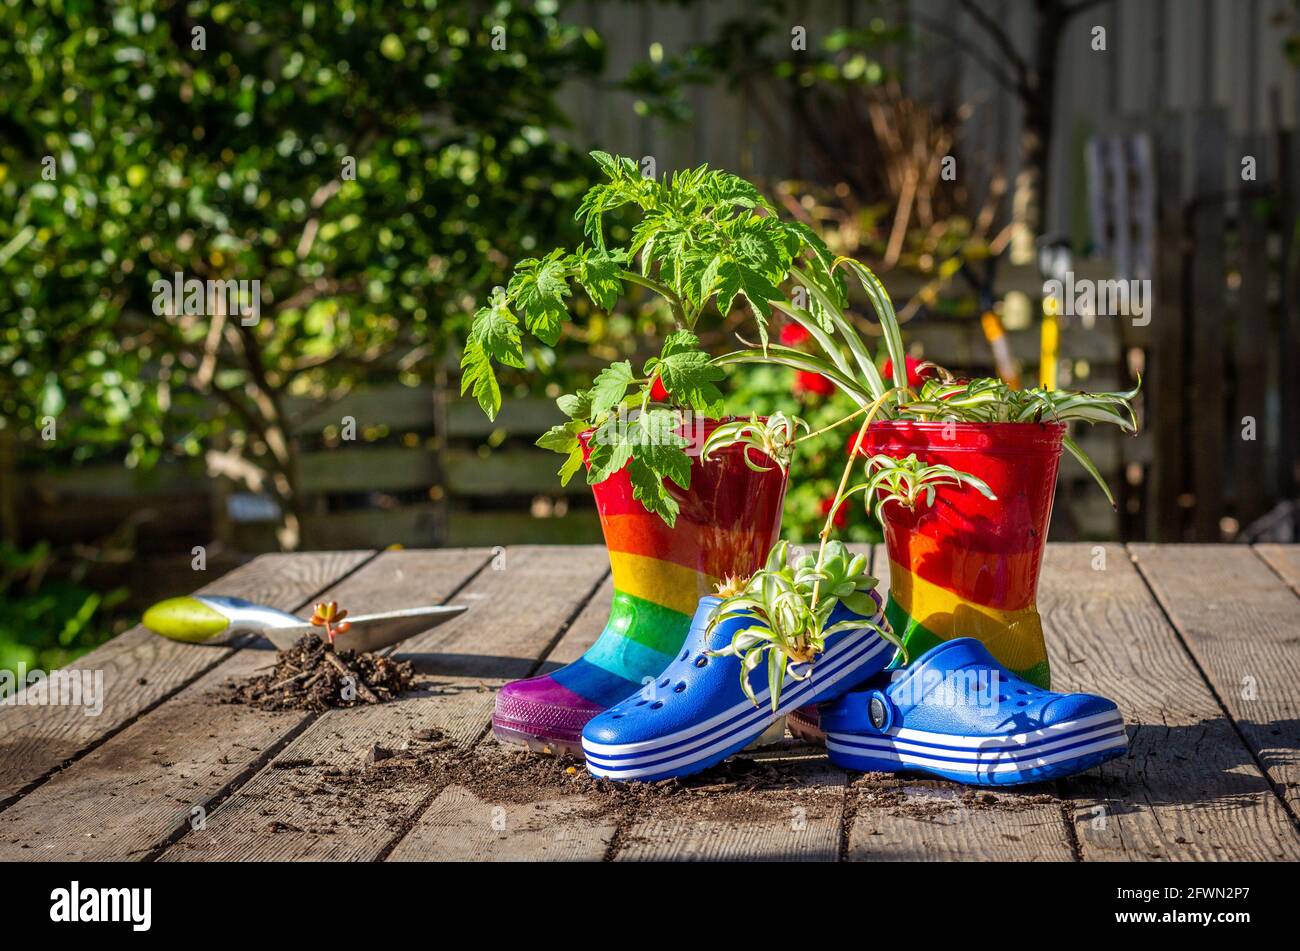 Stivali e scarpe riciclato per bambini sul banco da giardino utilizzato come pentole di piante, un modo divertente per incoraggiare il riutilizzo del riciclo e ridurre gli sprechi. Foto Stock